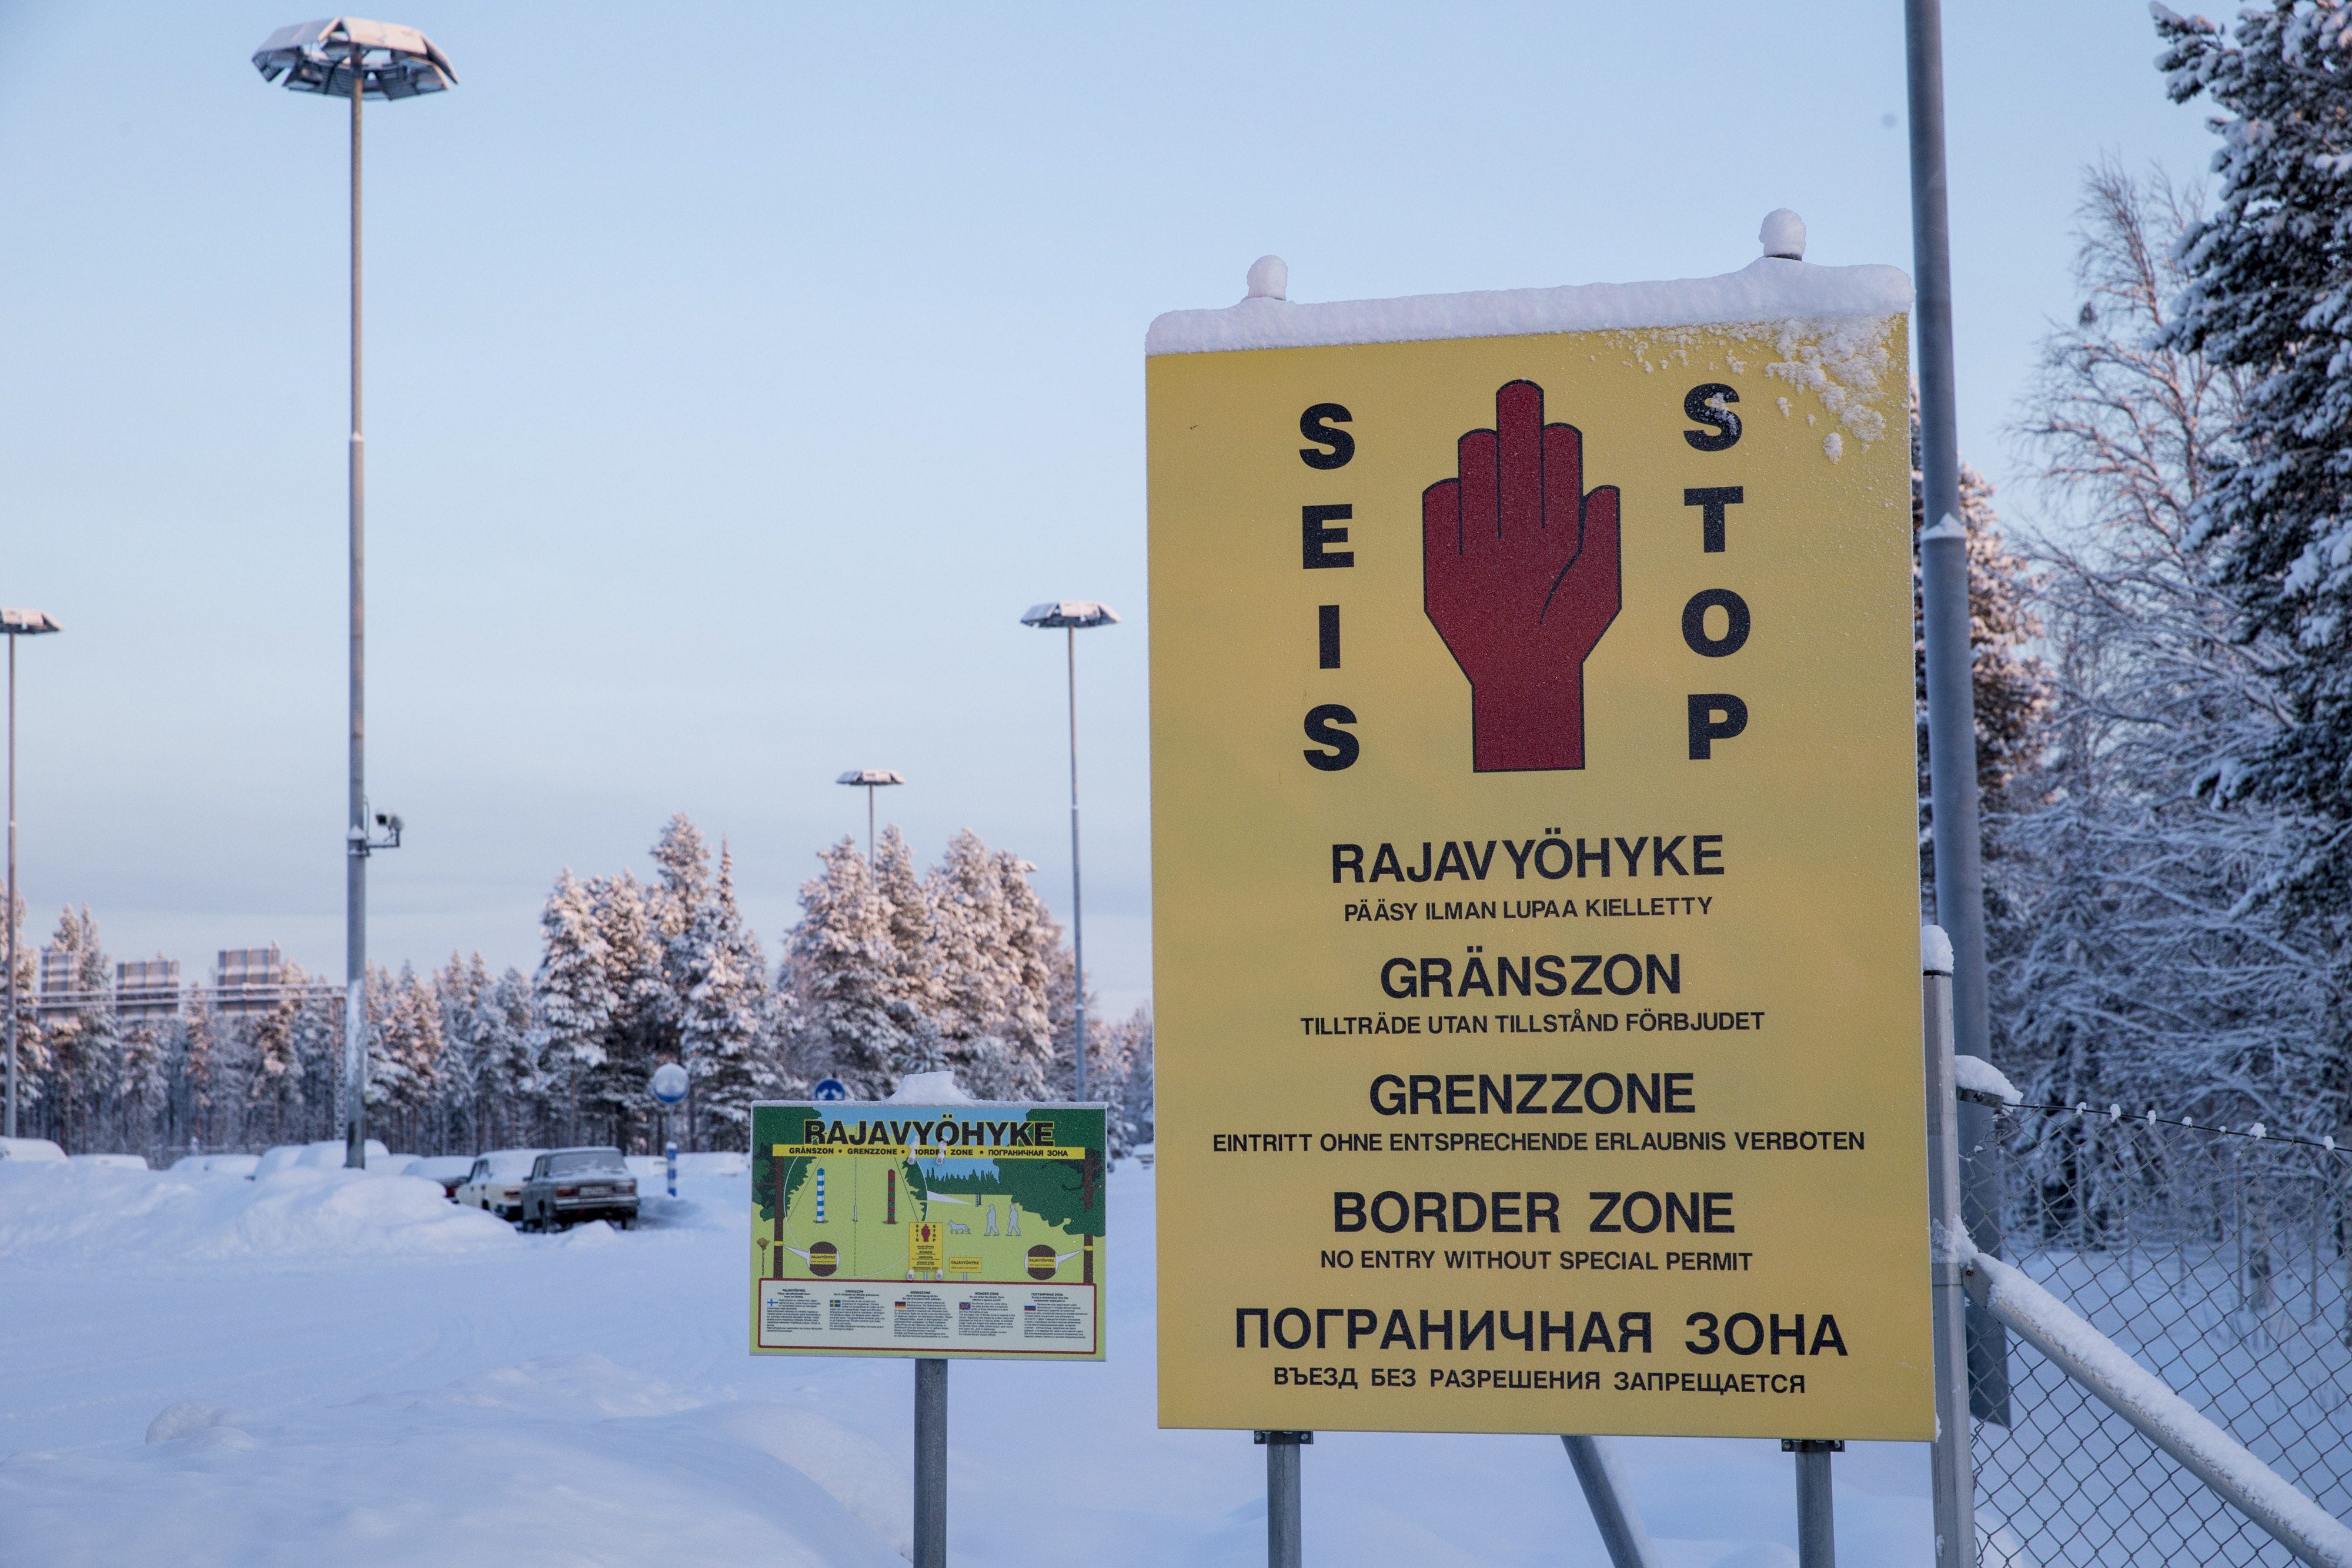 Kamu feliratokkal hitette el a bevándorlókkal, hogy nem Oroszországban, hanem Finnországban vannak